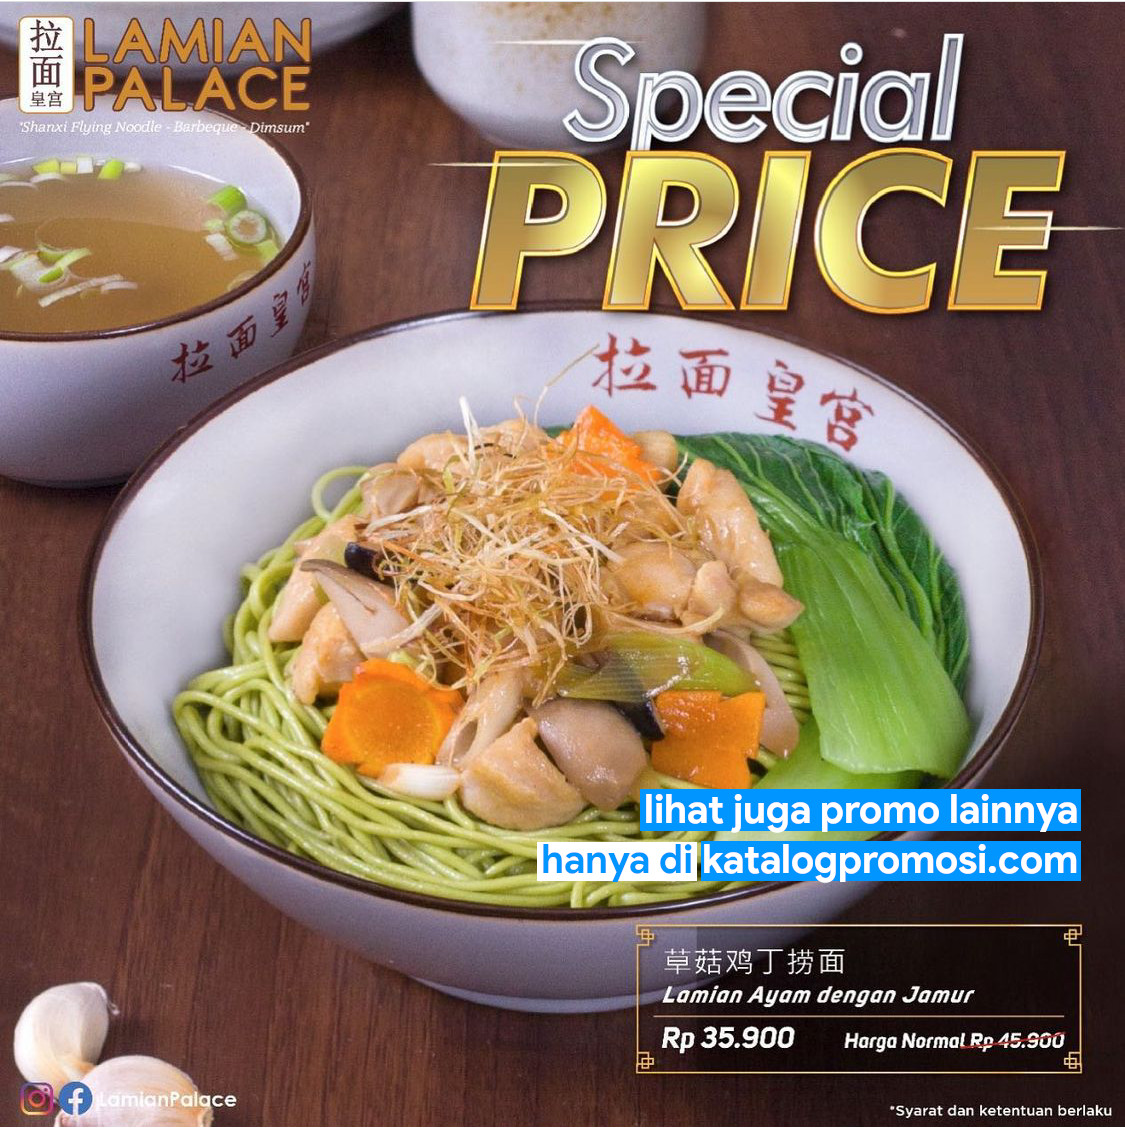 Promo LAMIAN PALACE SPECIAL PRICE Lamian Ayam dengan Jamur cuma Rp. 35.900++